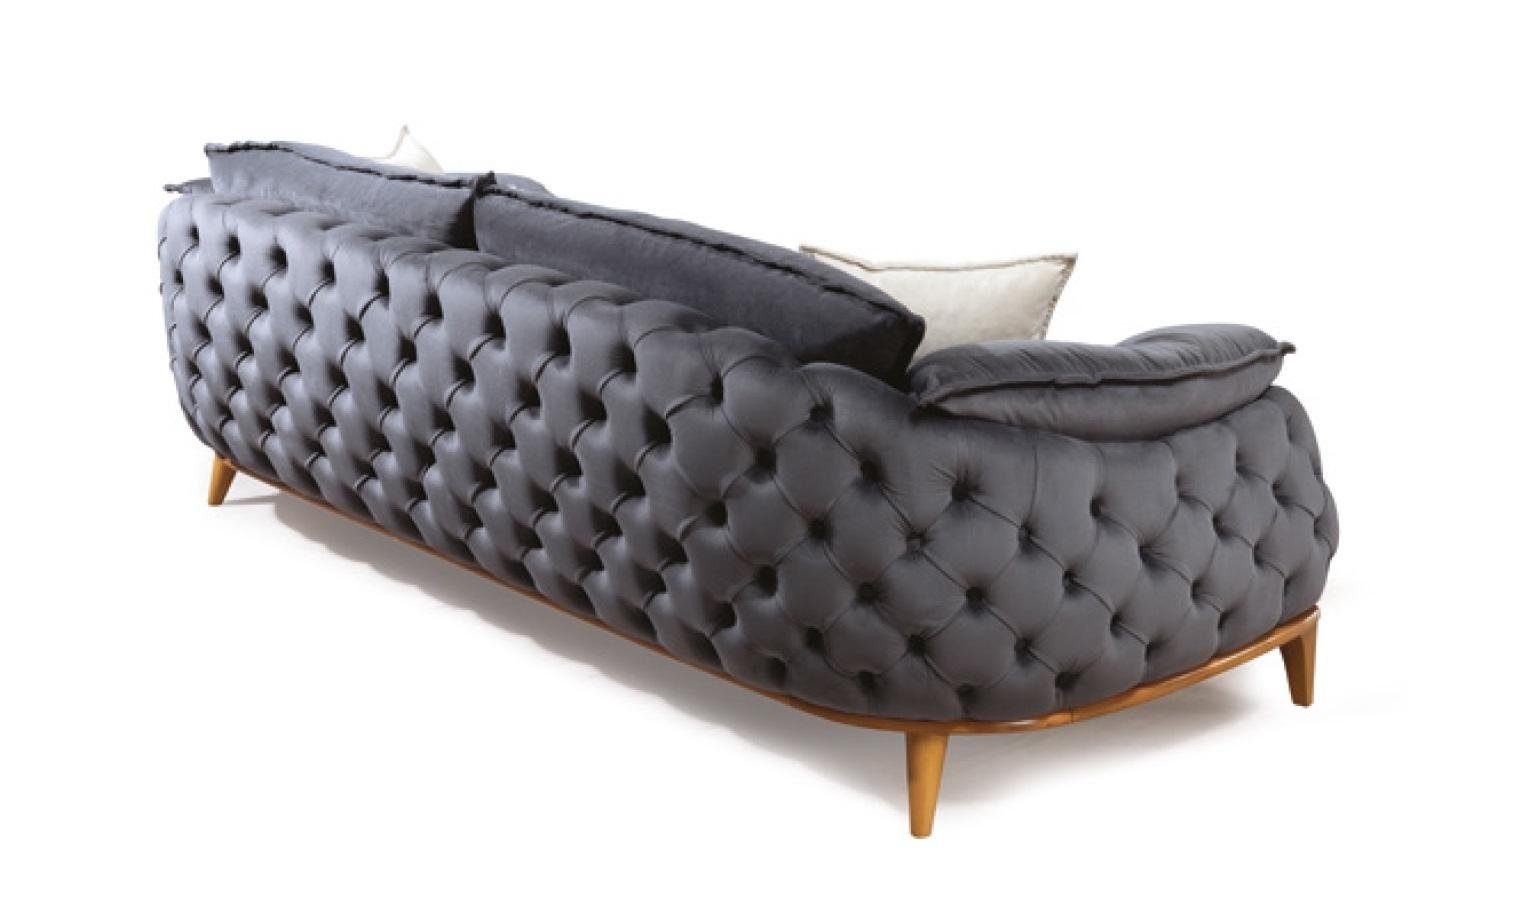 JVmoebel Sofa Grauer Chesterfield Made Sofa, Couch Textil Dreisitzer Polster Europe Sofas Leder in